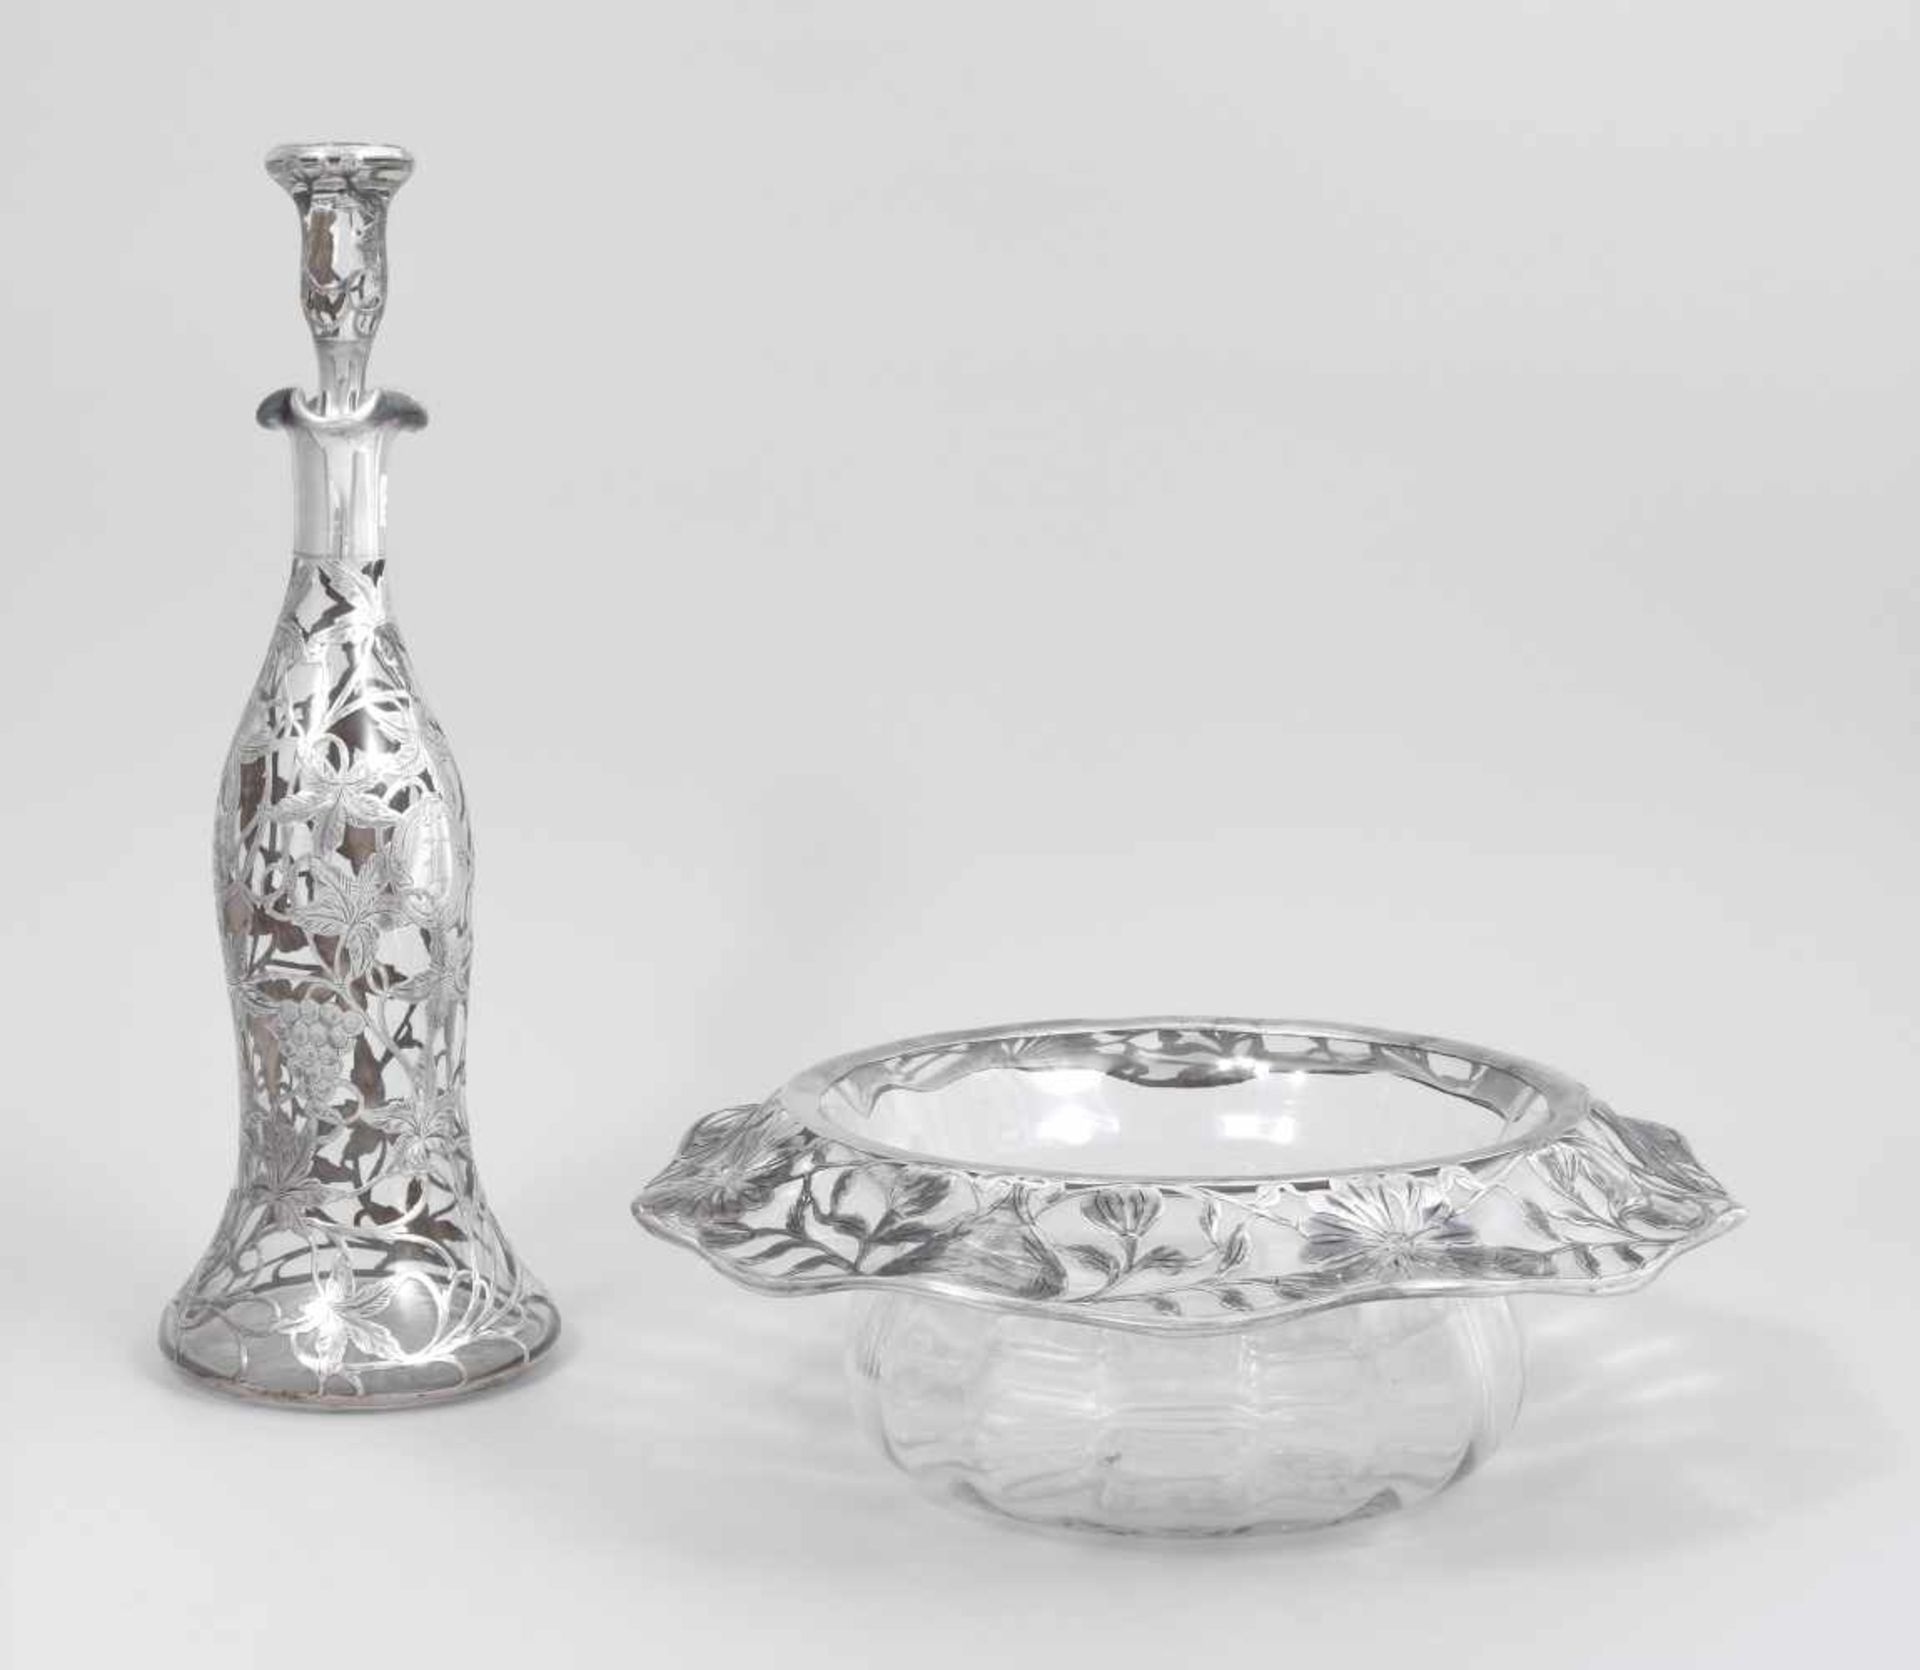 Lot: Karaffe und Schale Um 1900. Glas/Silber. Glockenförmige Karaffe mit Stöpsel und runde, tiefe